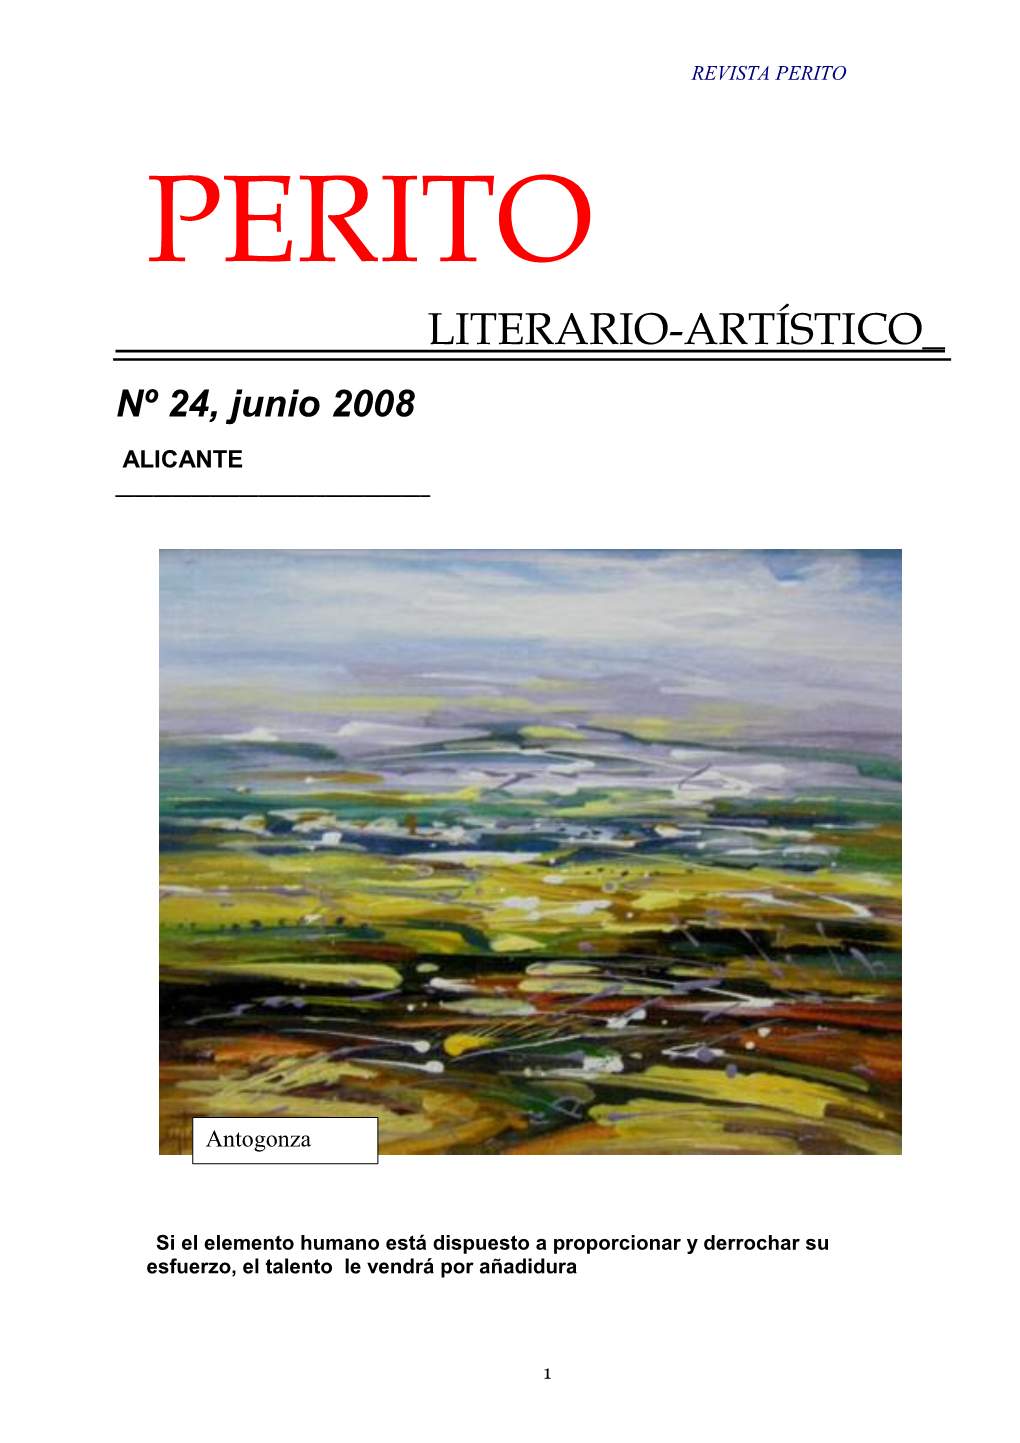 Revista PERITO (Literario-Artístico) Nº24